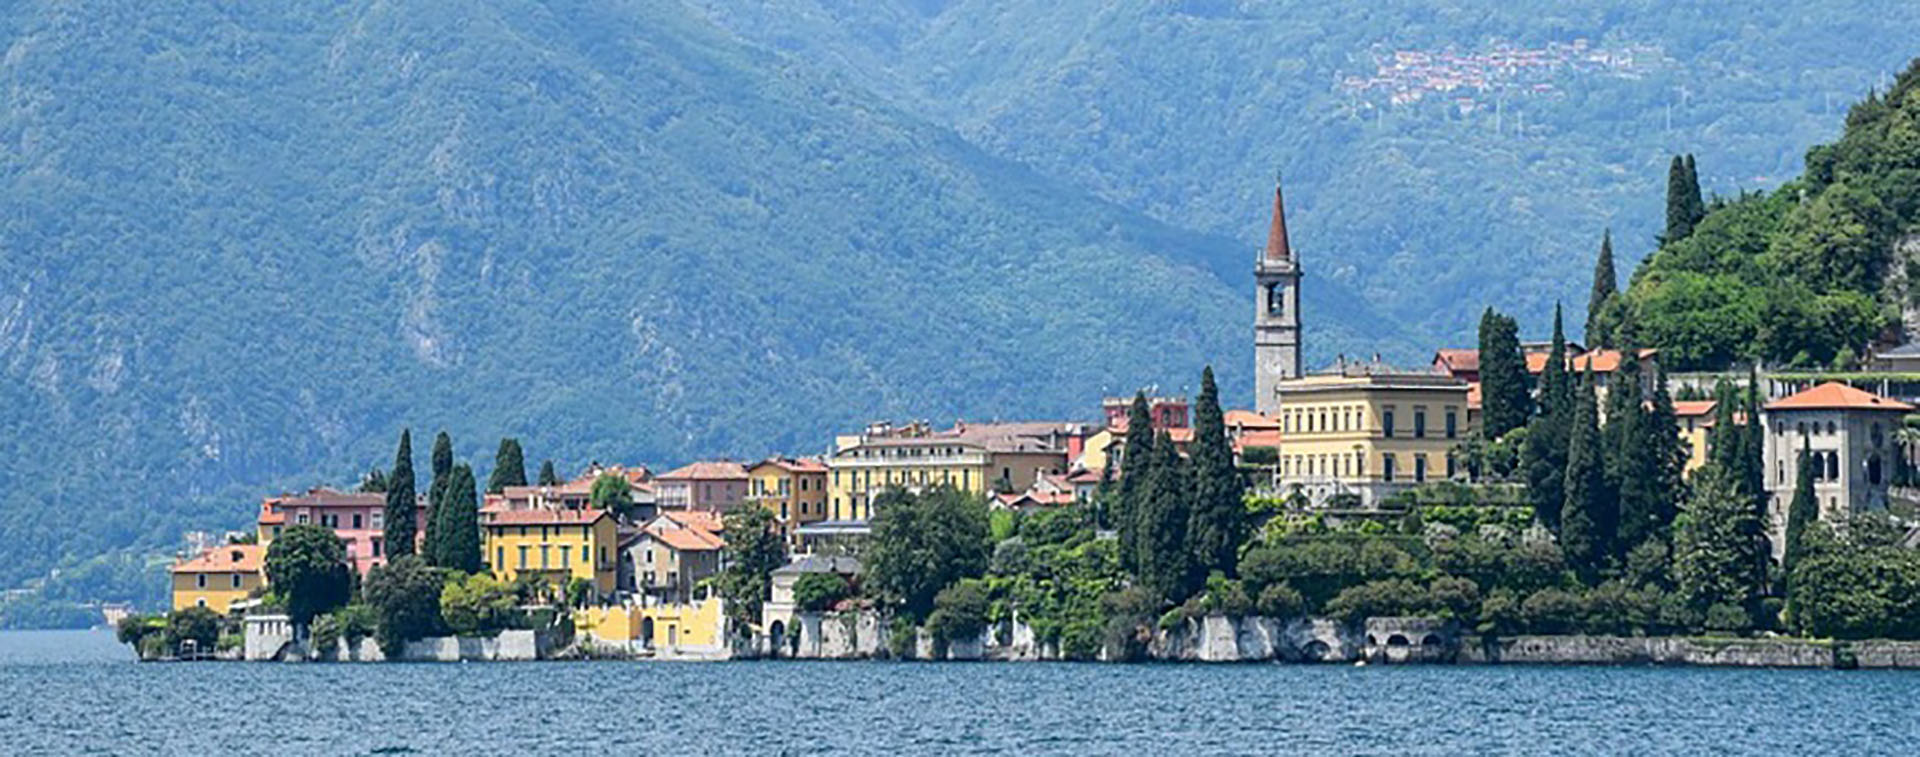 Uno de los residentes a tiempo parcial más famosos del lago de Como es George Clooney, a quien se ha visto en muchas ocasiones pasar tiempo en el área cercana a su residencia (Turismo Lago di Como)